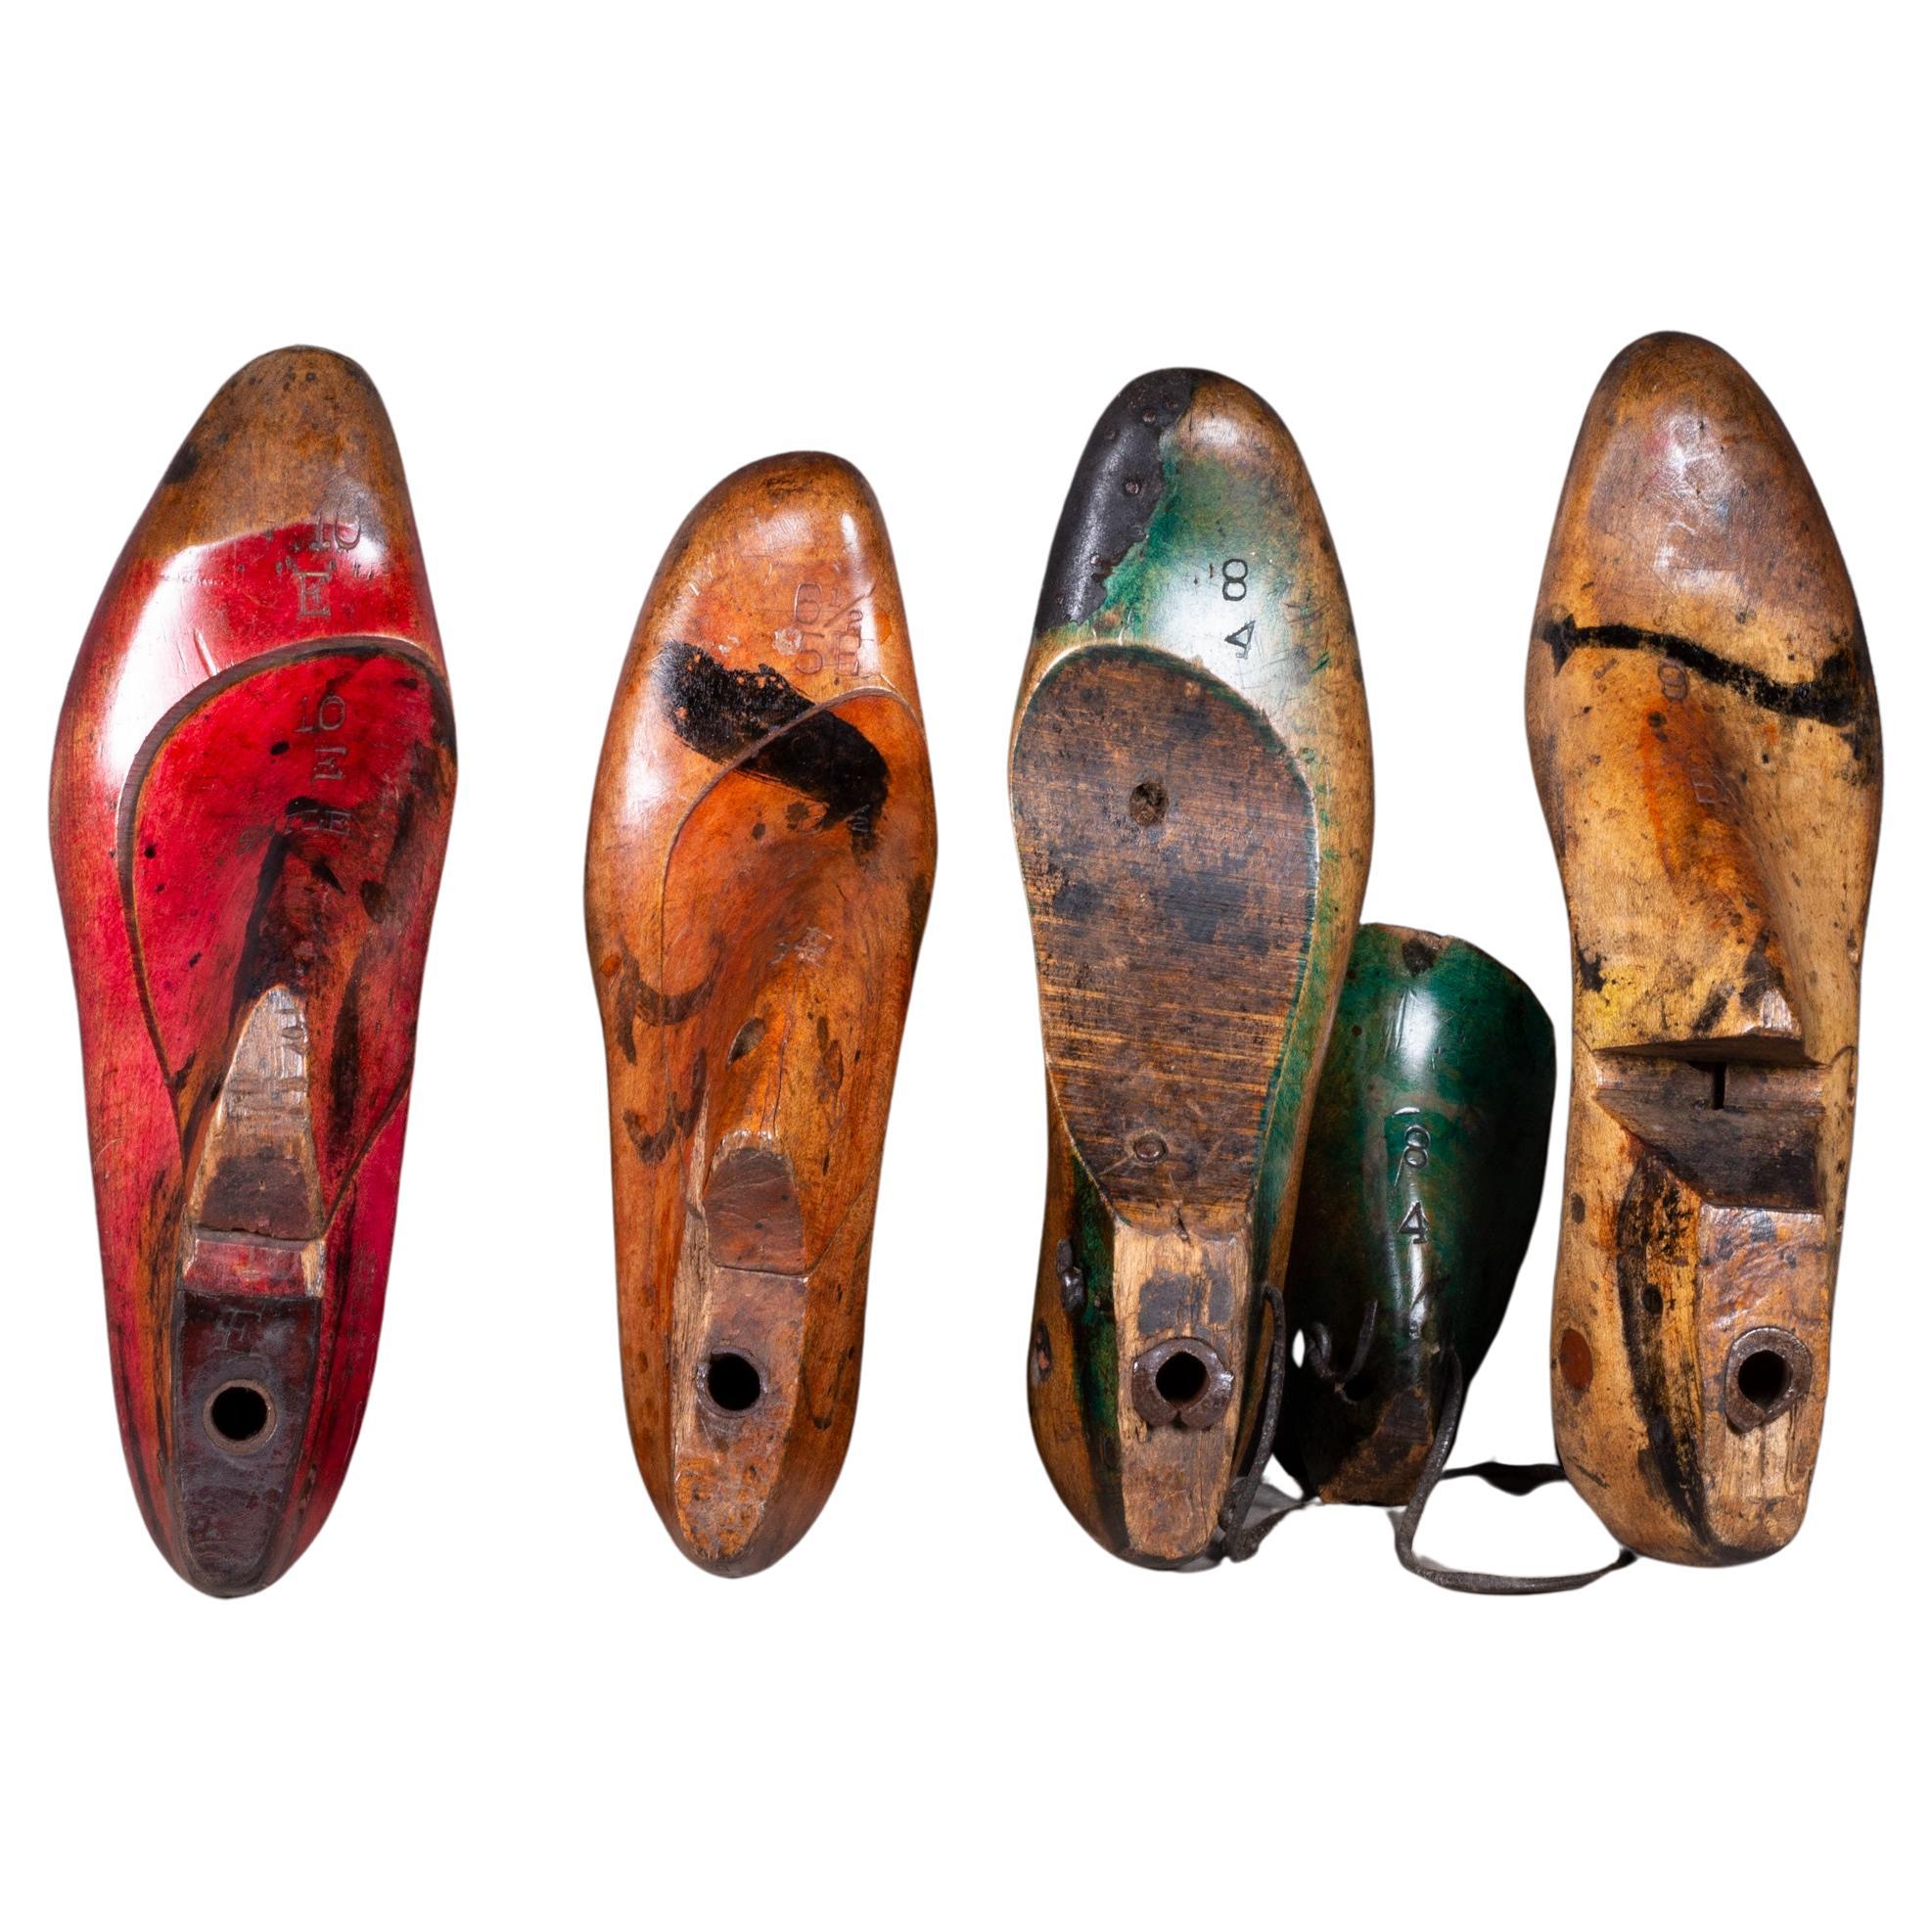 Formes de chaussures anciennes en bois vers 1920 Plusieurs ensembles disponibles (expédition gratuite)